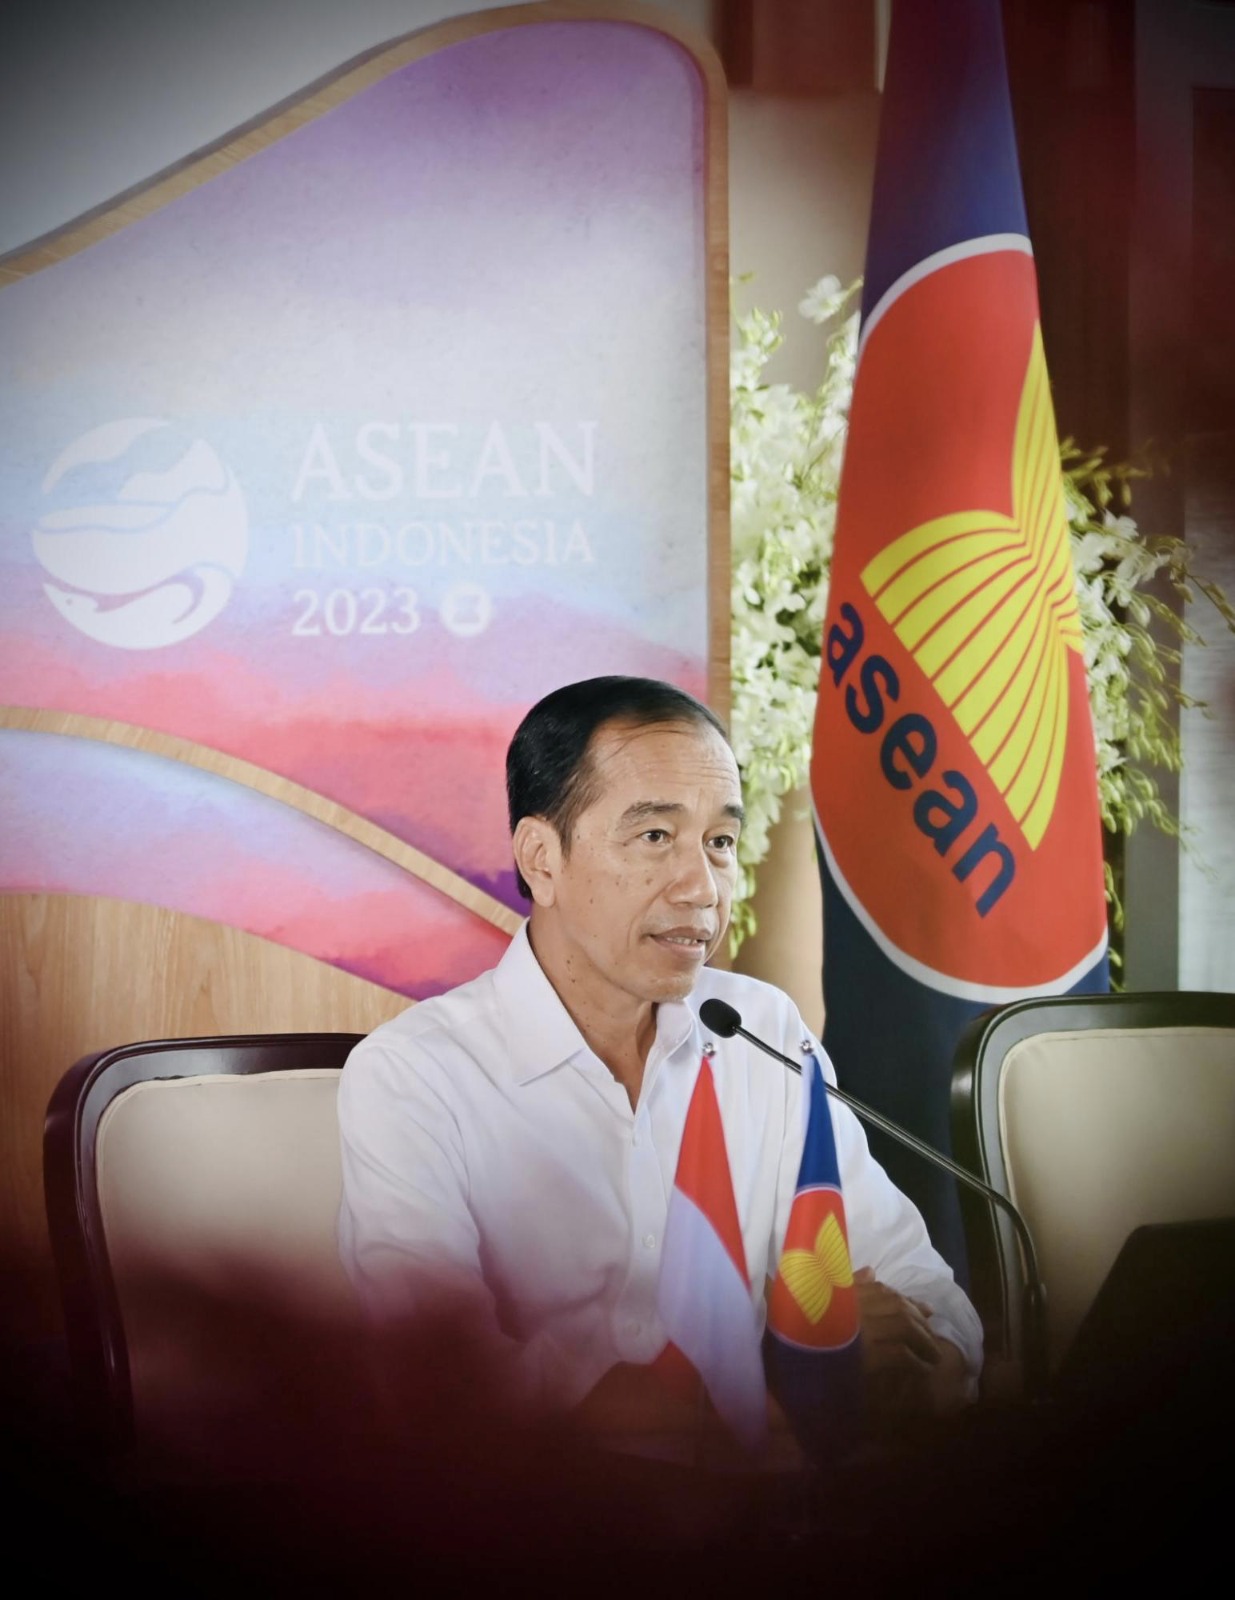 Di Forum ASEAN Indonesia Kembali Serukan Penghentian Kekerasan di Myanmar